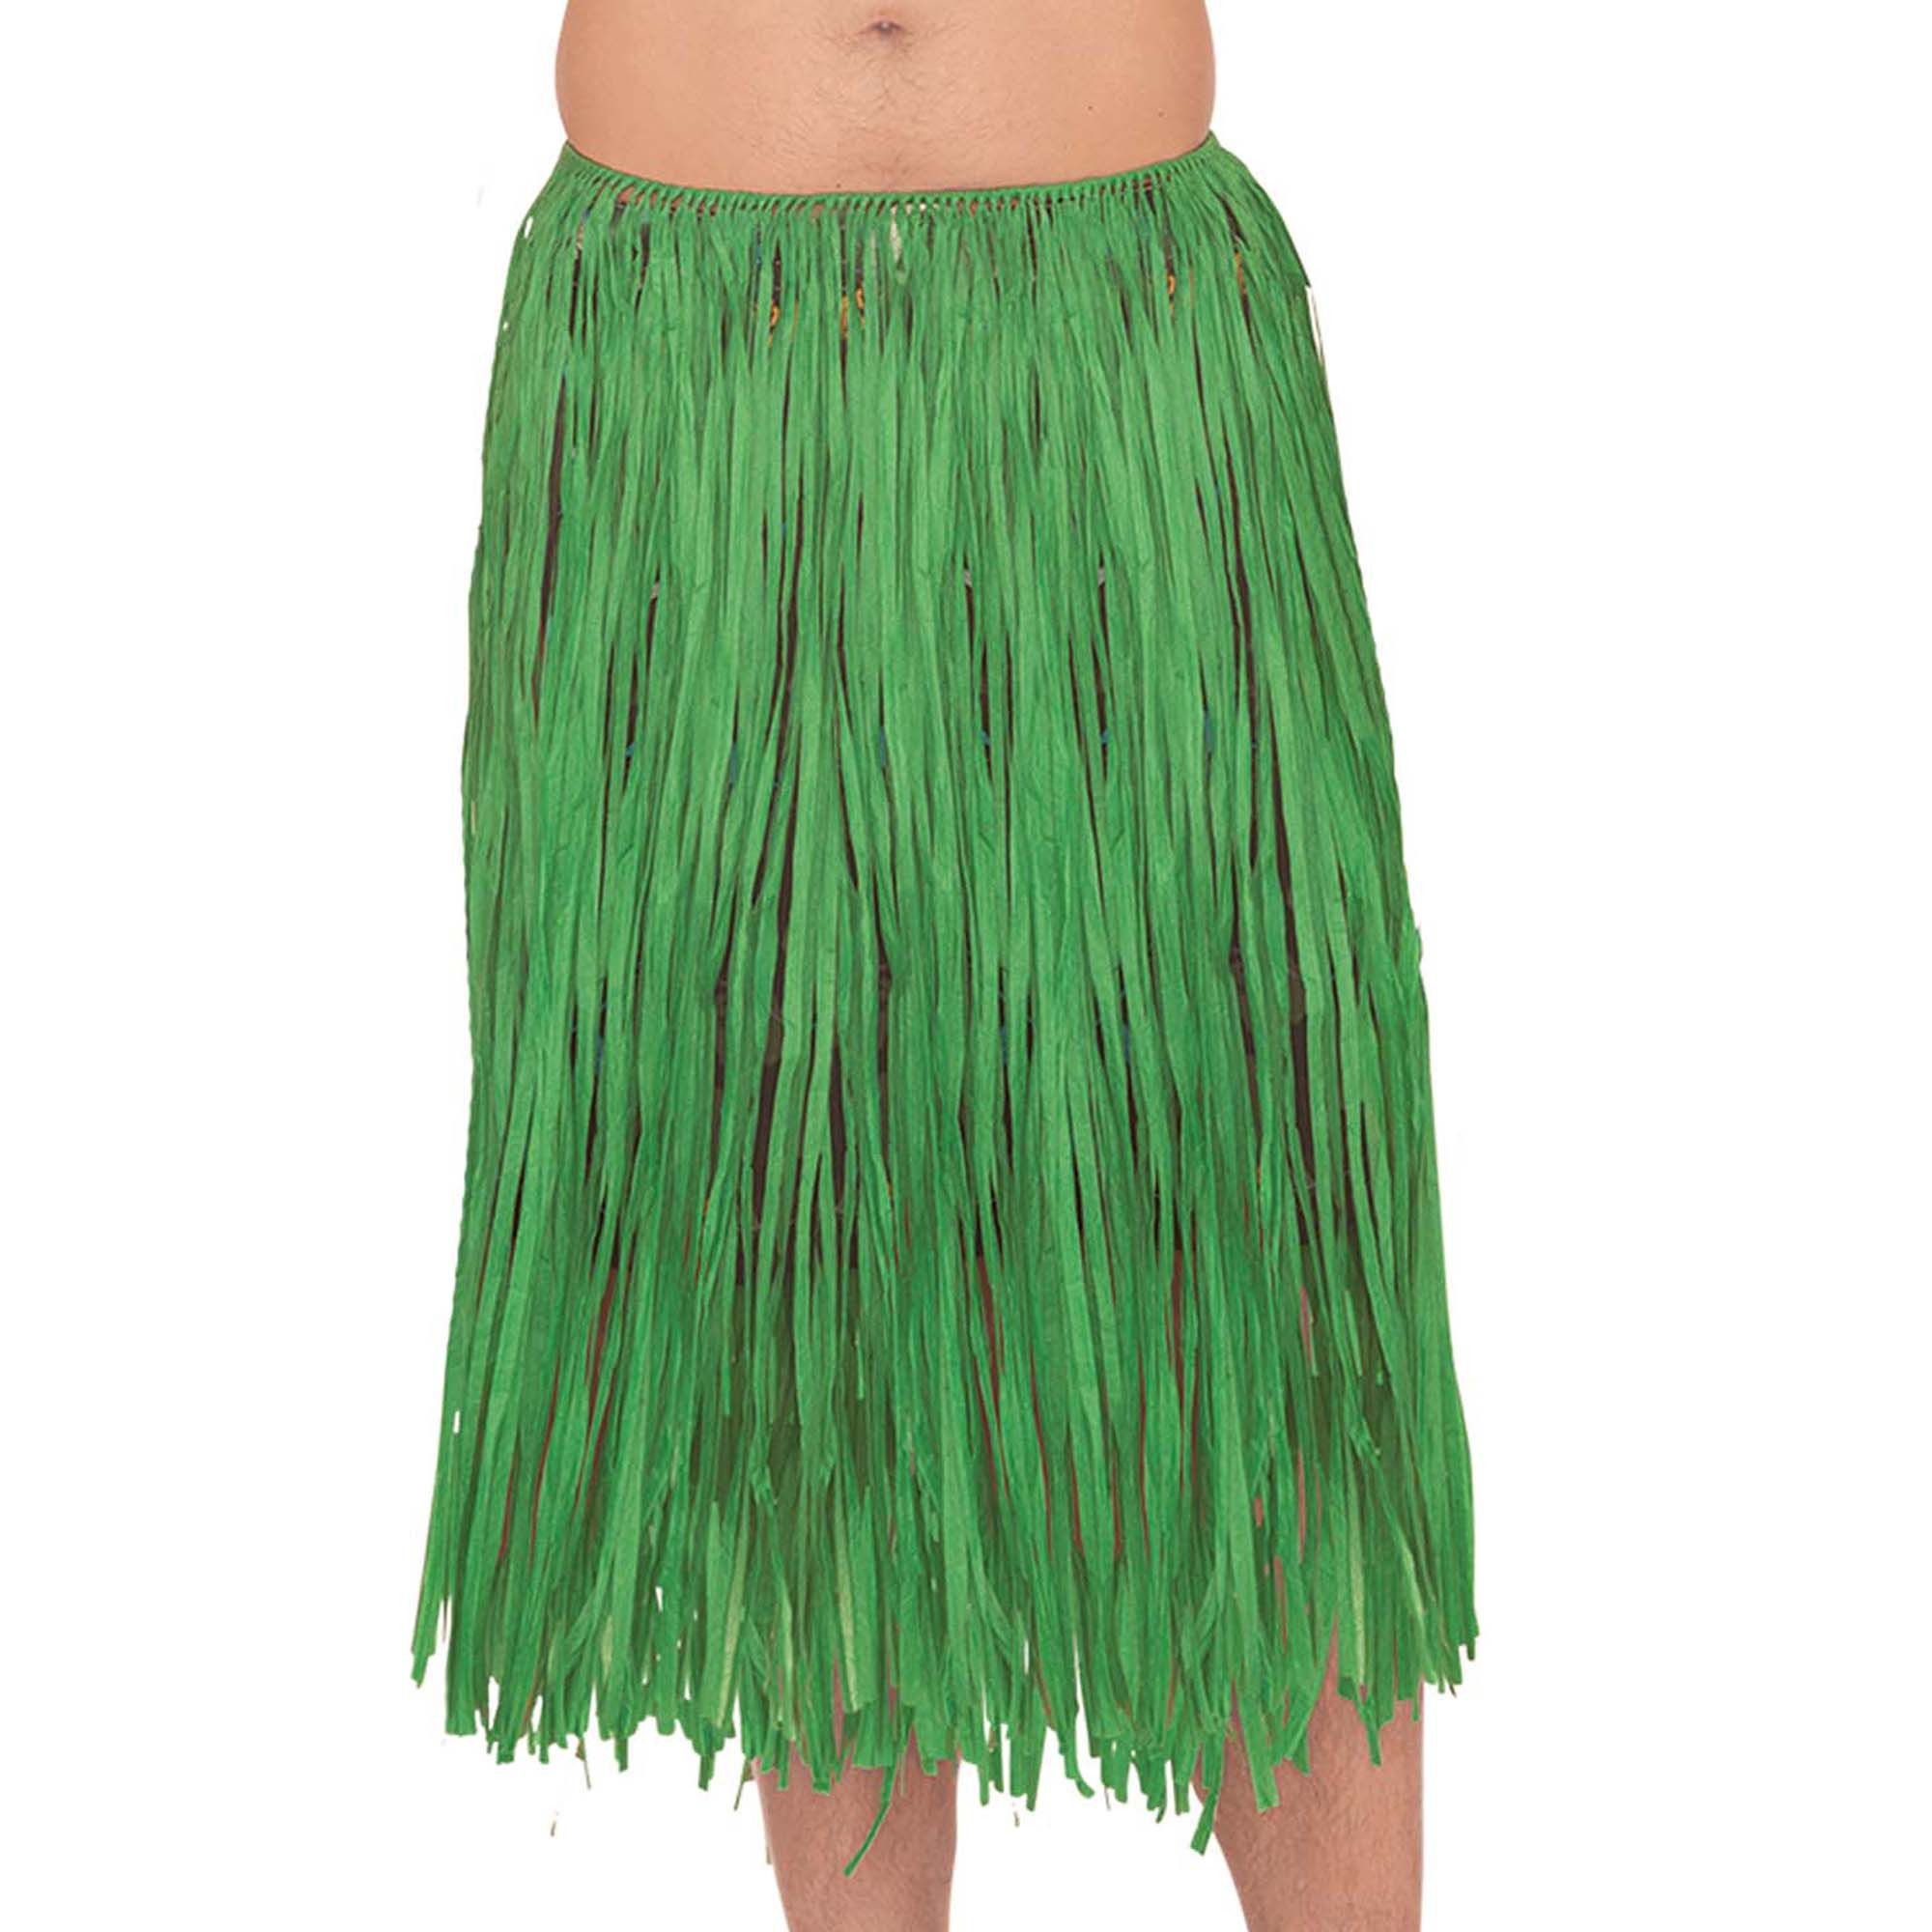 Adult Artificial Grass Hula Skirt (Green)